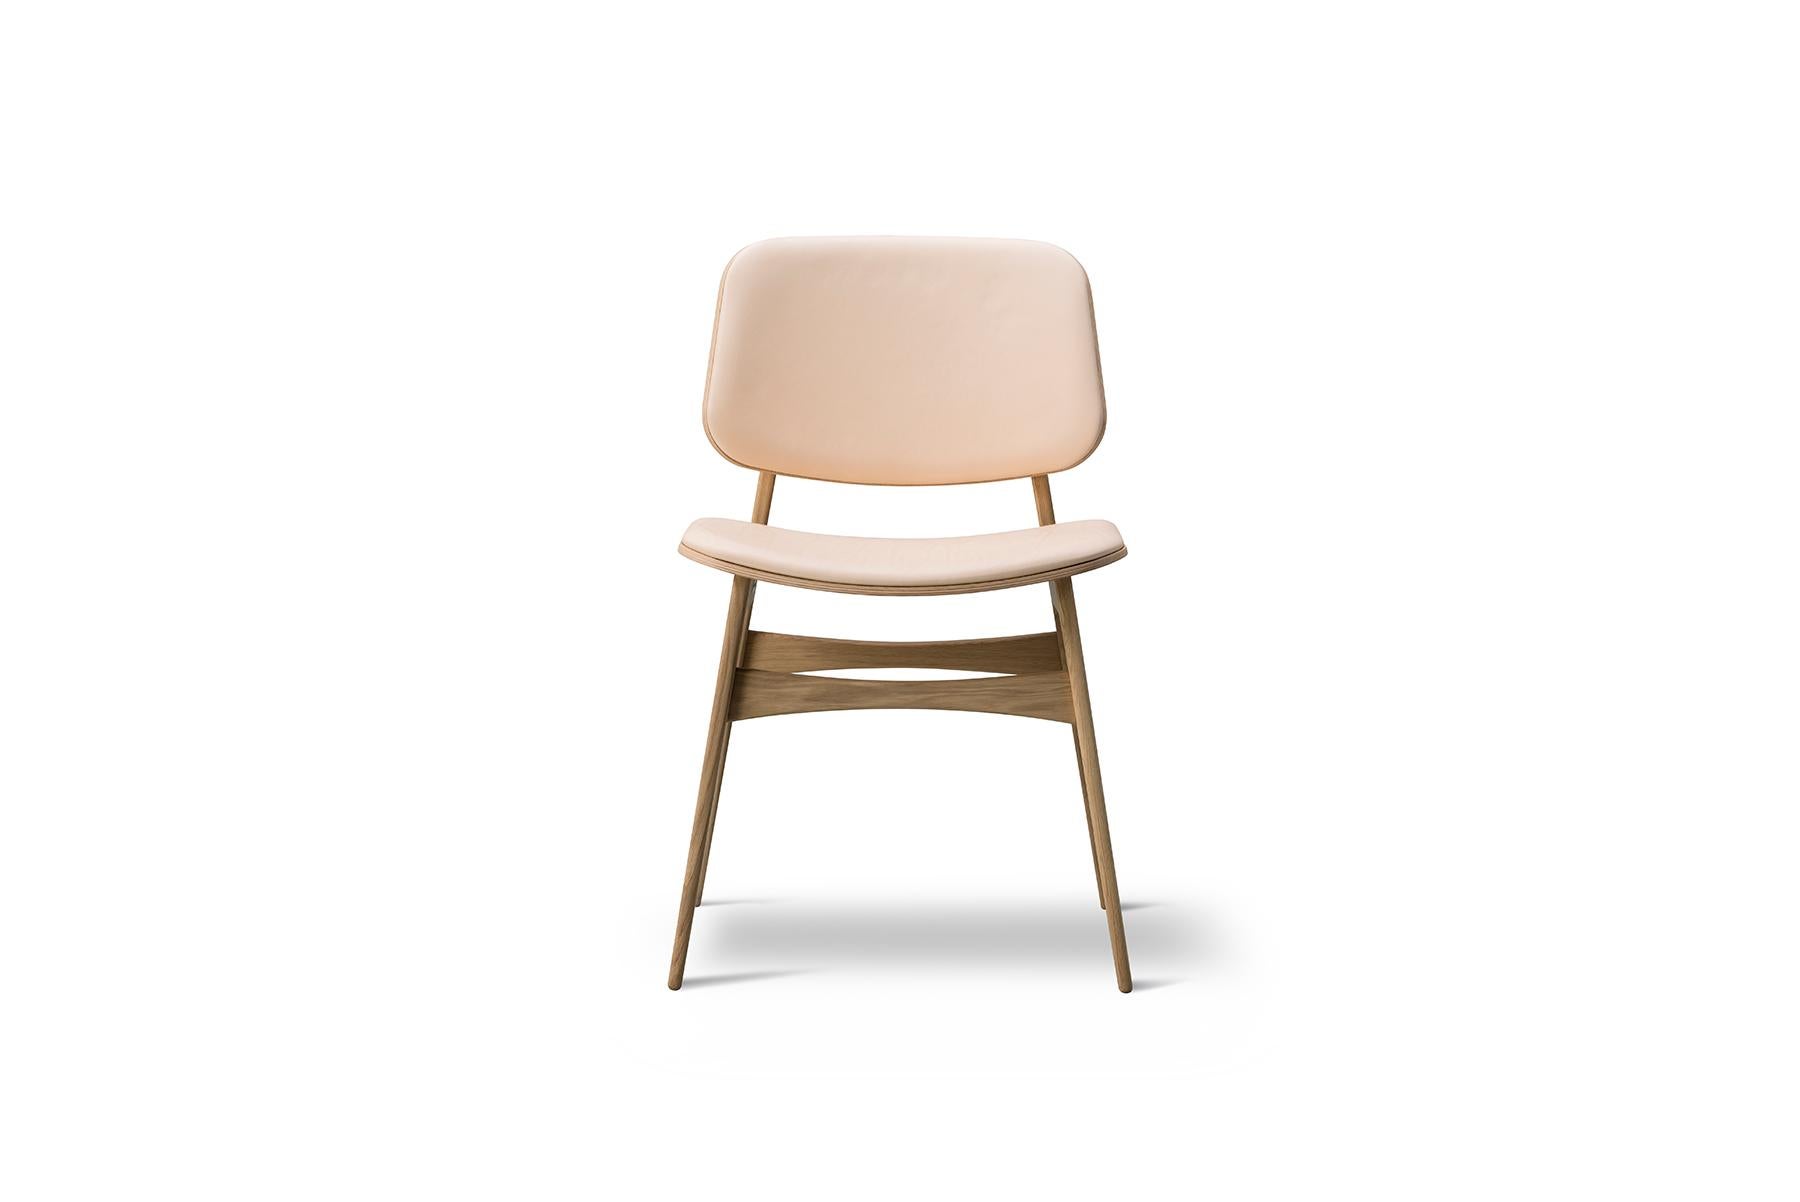 Mogensen a présenté le prototype de la chaise Soborg de Børge Mogensen en 1950. Son intention était de fusionner des coquilles de contreplaqué avec le fonctionnalisme du bois massif qui fait sa signature. Le dossier et l'assise généreux, avec le